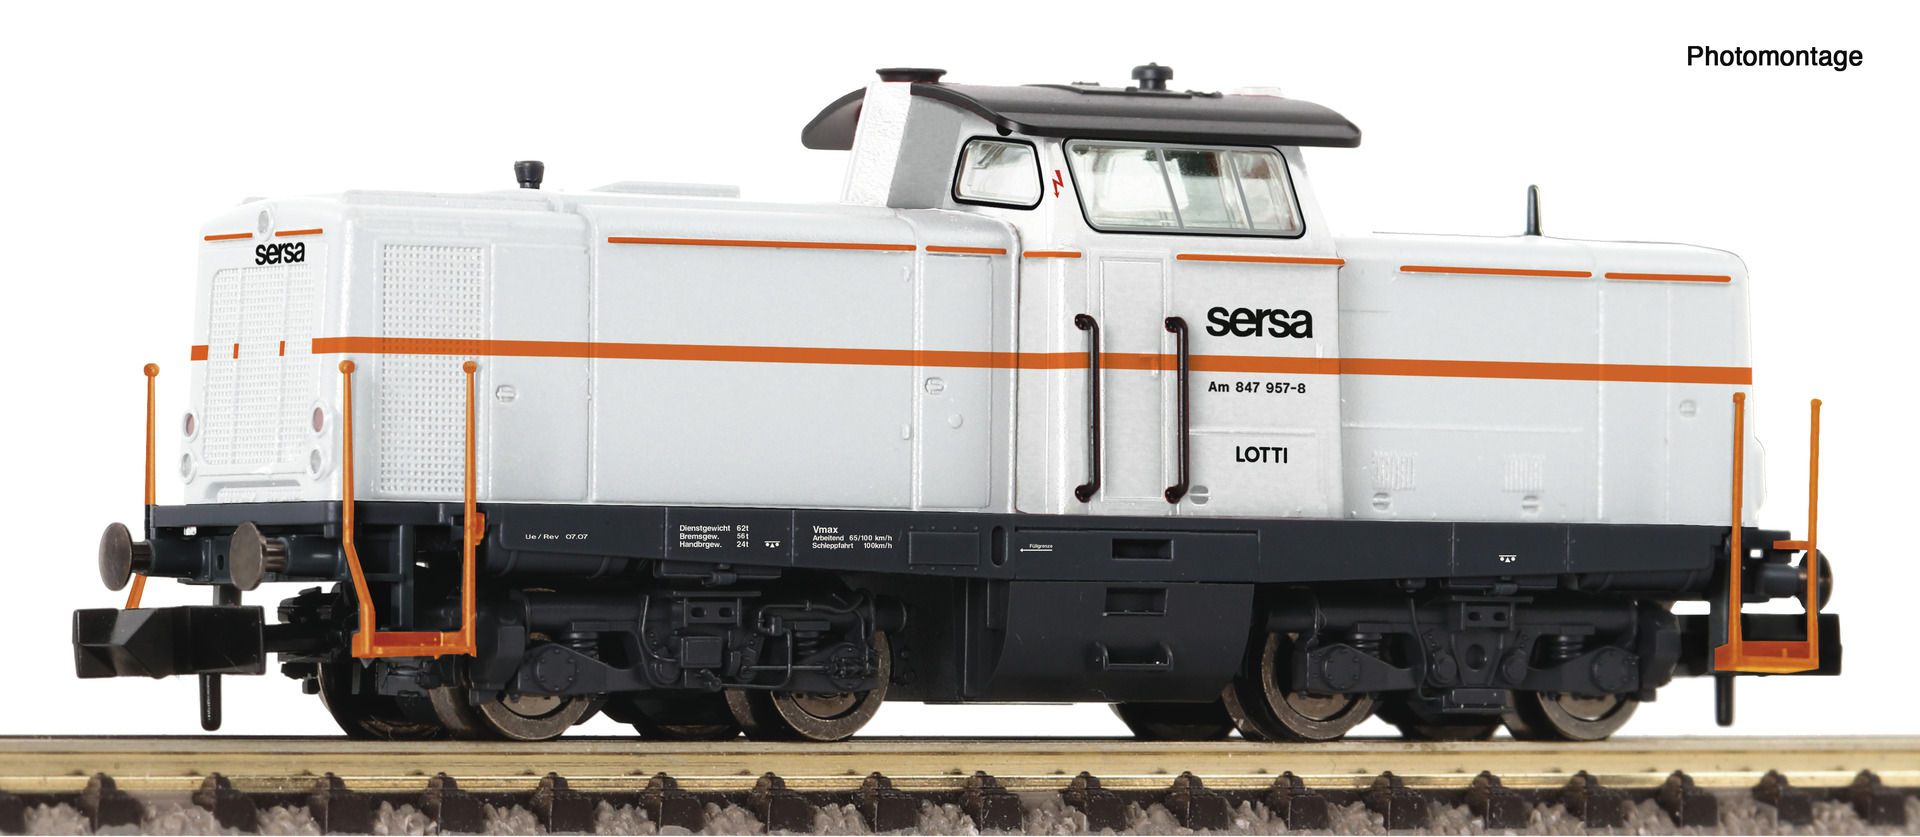 FLEISCHMANN 721282 Diesellokomotive Am 847 957-8, SERSA DCC Sound Spur N